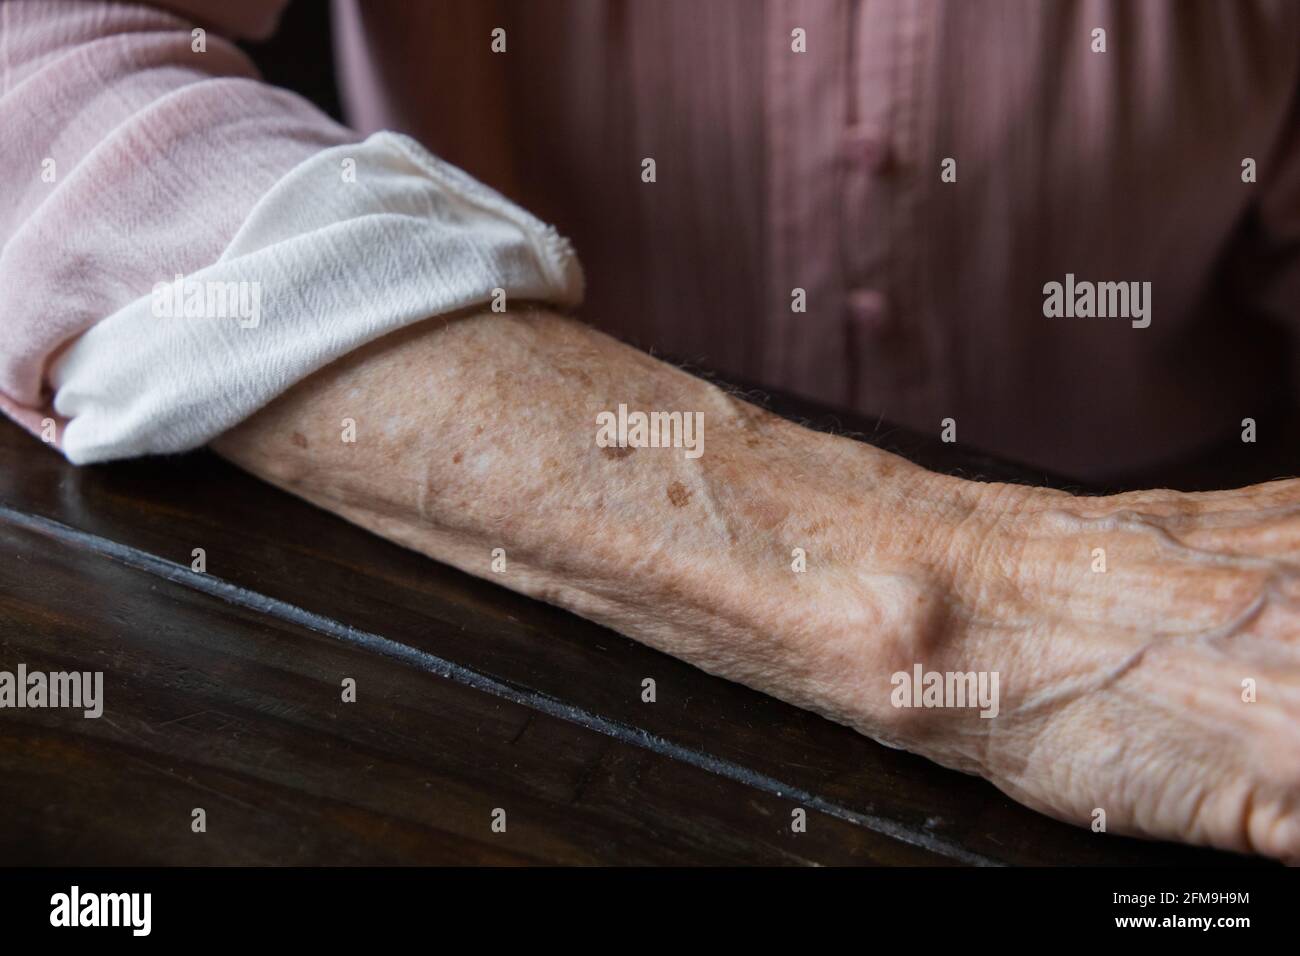 Anf braccio di nonna anziana con rughe e macchie di età. Foto Stock